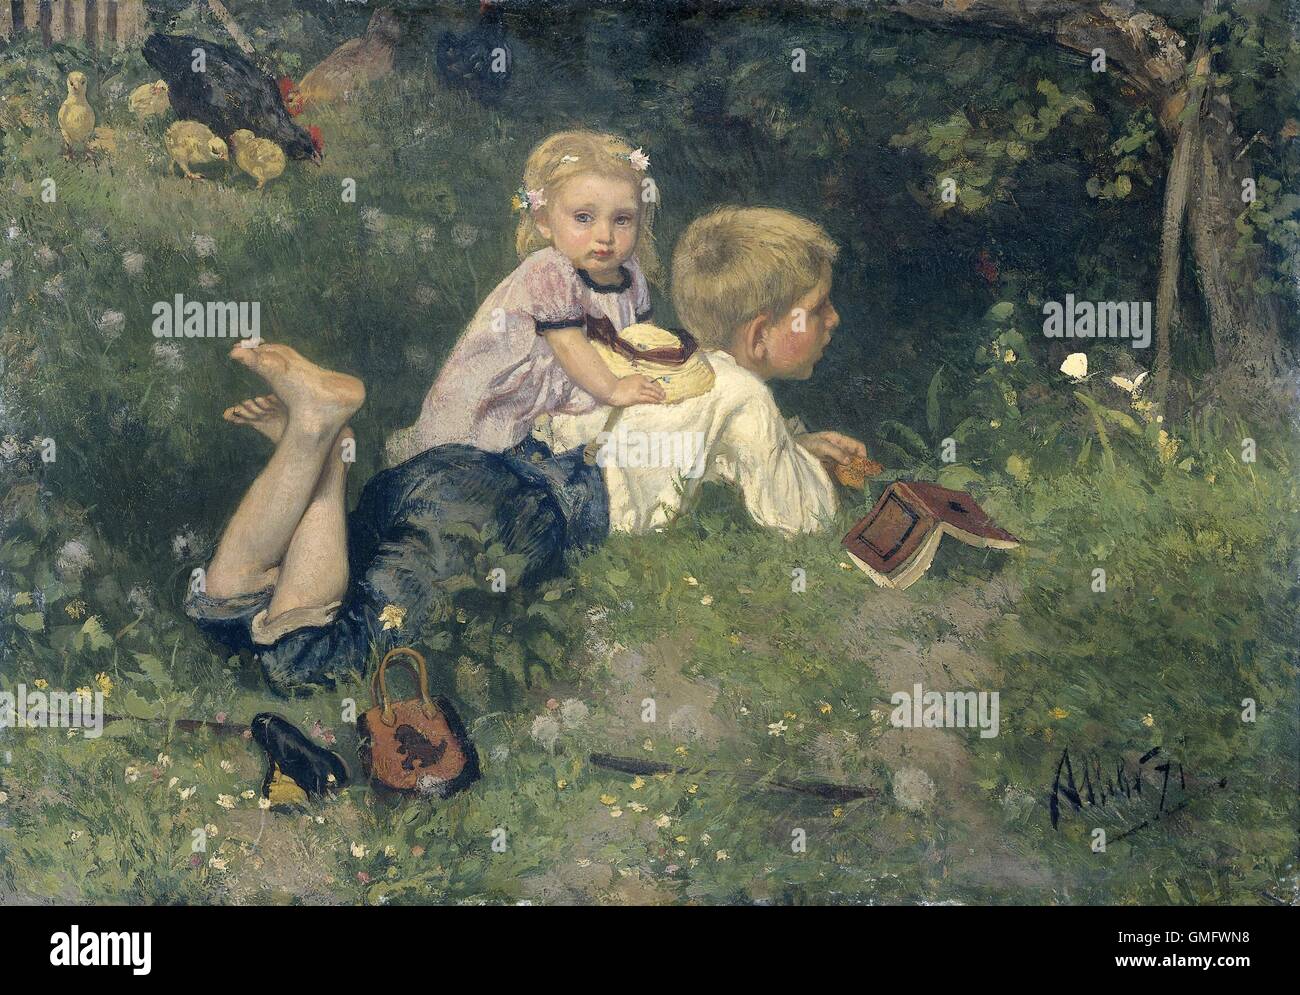 Die Schmetterlinge, von August Allebe, 1871, niederländische Malerei, Öl auf Holz. Ein Junge auf dem Rasen liegen, während Schmetterlinge beobachten. Begleitet wird er von einem blonden Mädchen. Nähe befindet sich eine schwarze Henne mit ihren Küken. (BSLOC 2016 1 57) Stockfoto